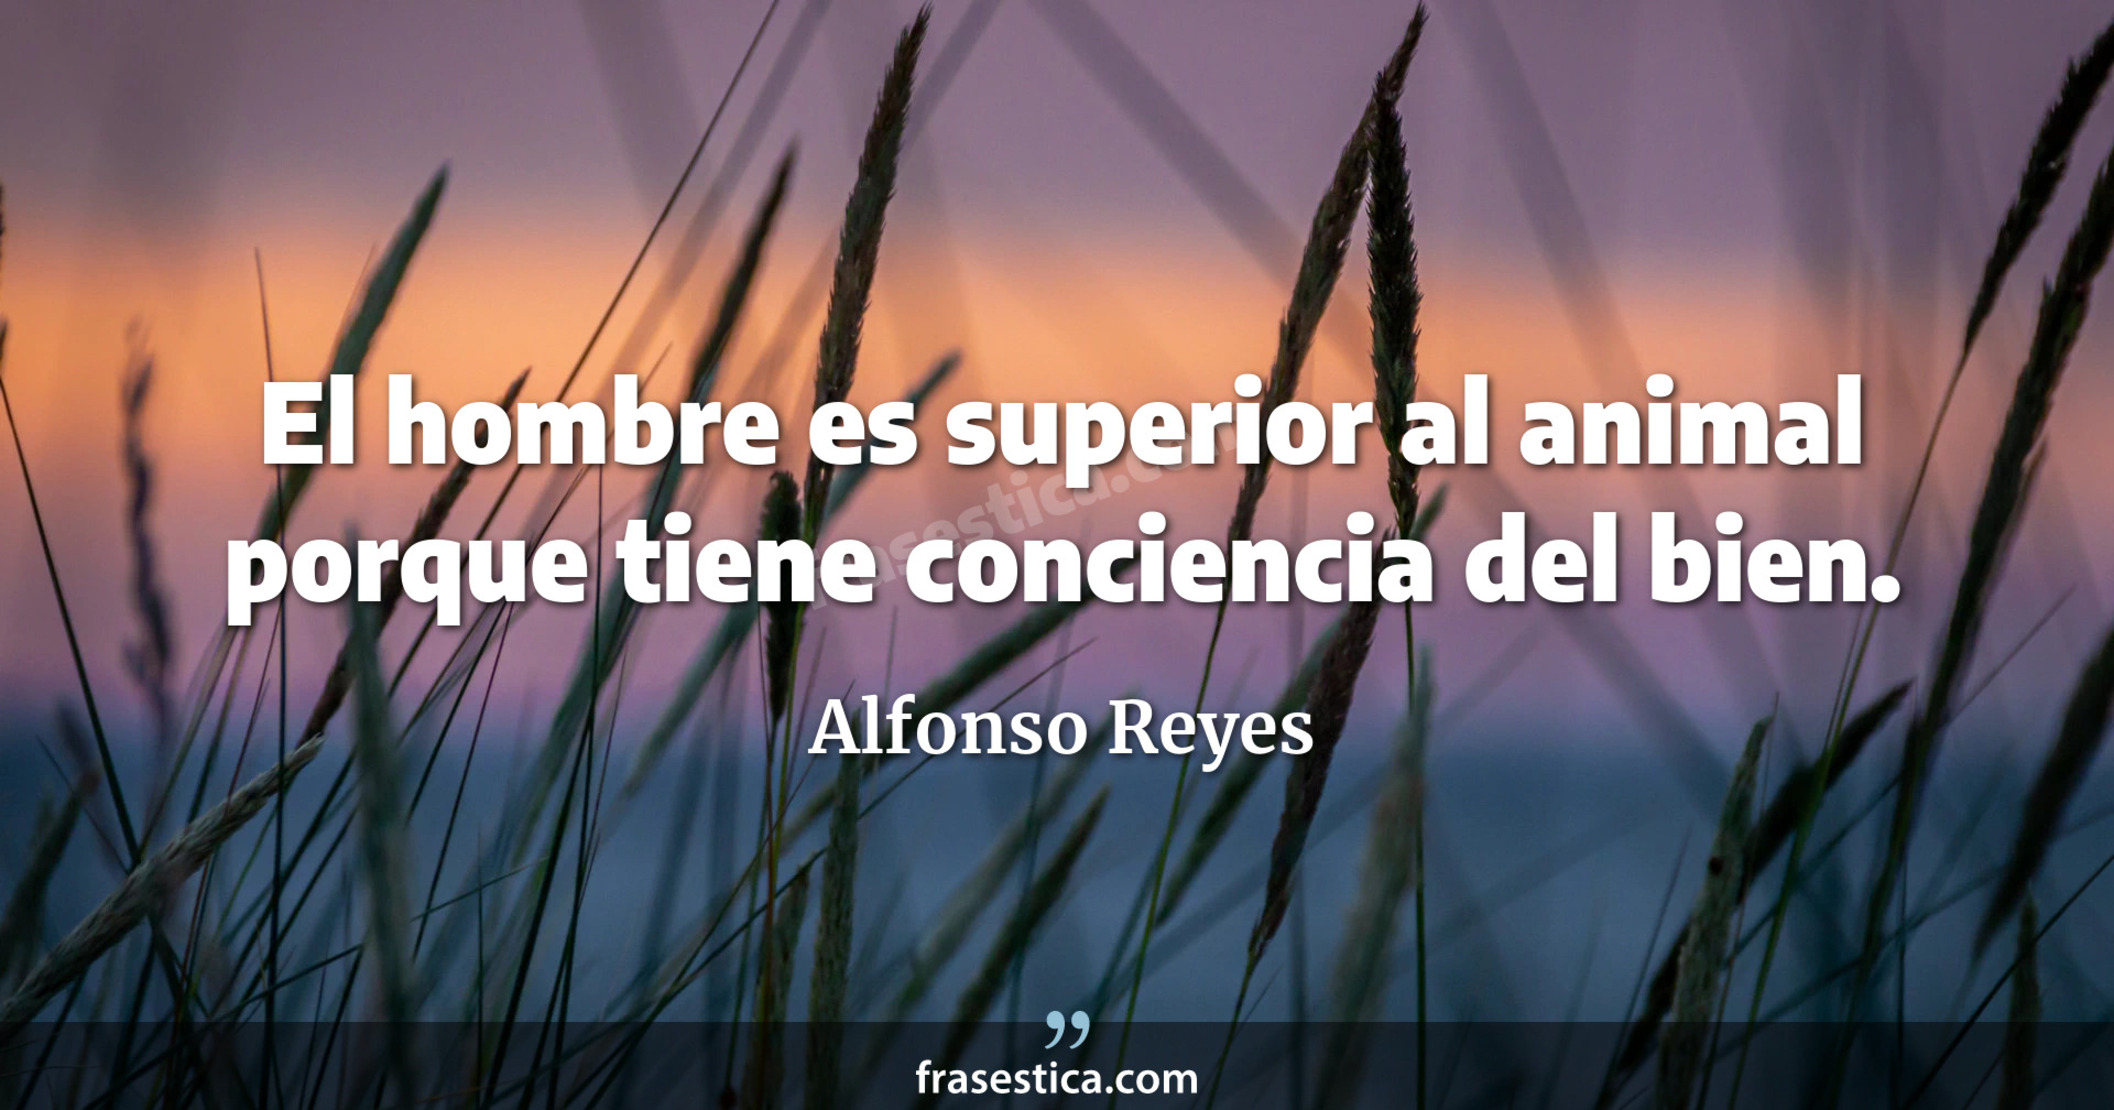 El hombre es superior al animal porque tiene conciencia del bien. - Alfonso Reyes